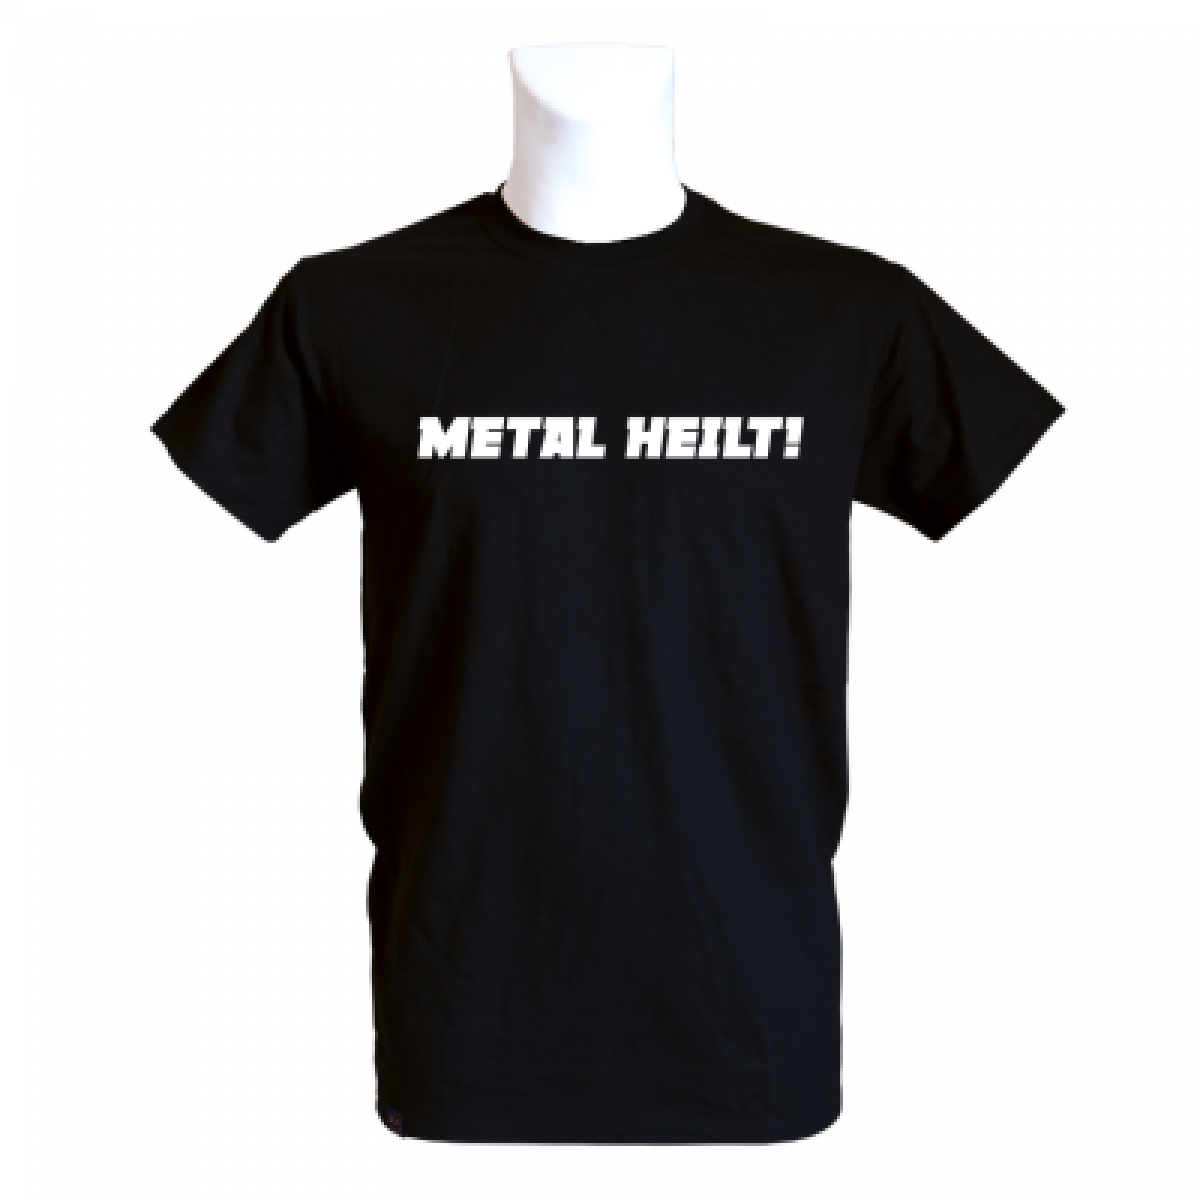 METAL HEILT - T-Shirt 'Metal Heilt', black